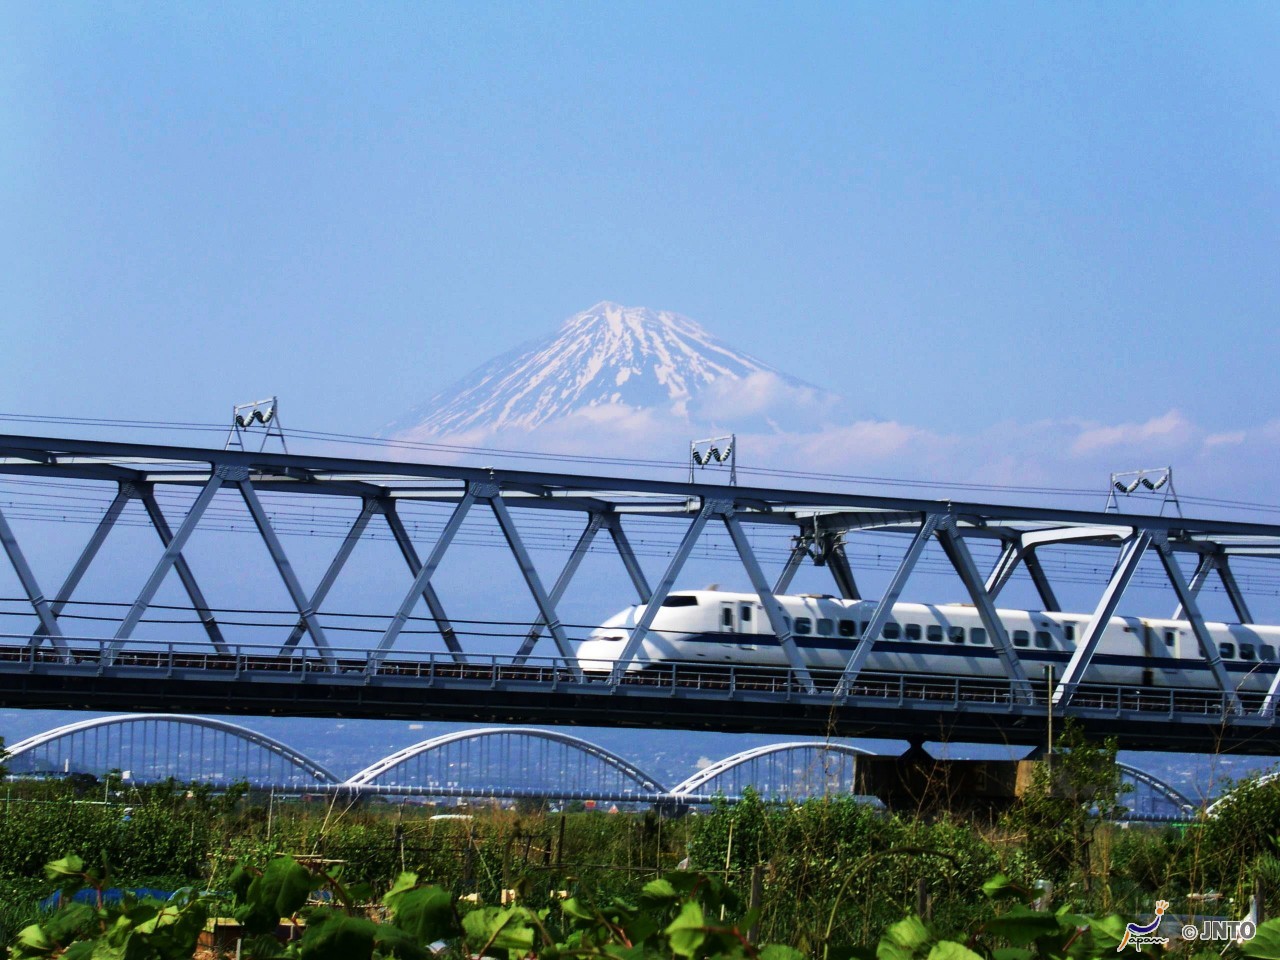 Mishima via (Tokaido shinkansen bullet train)